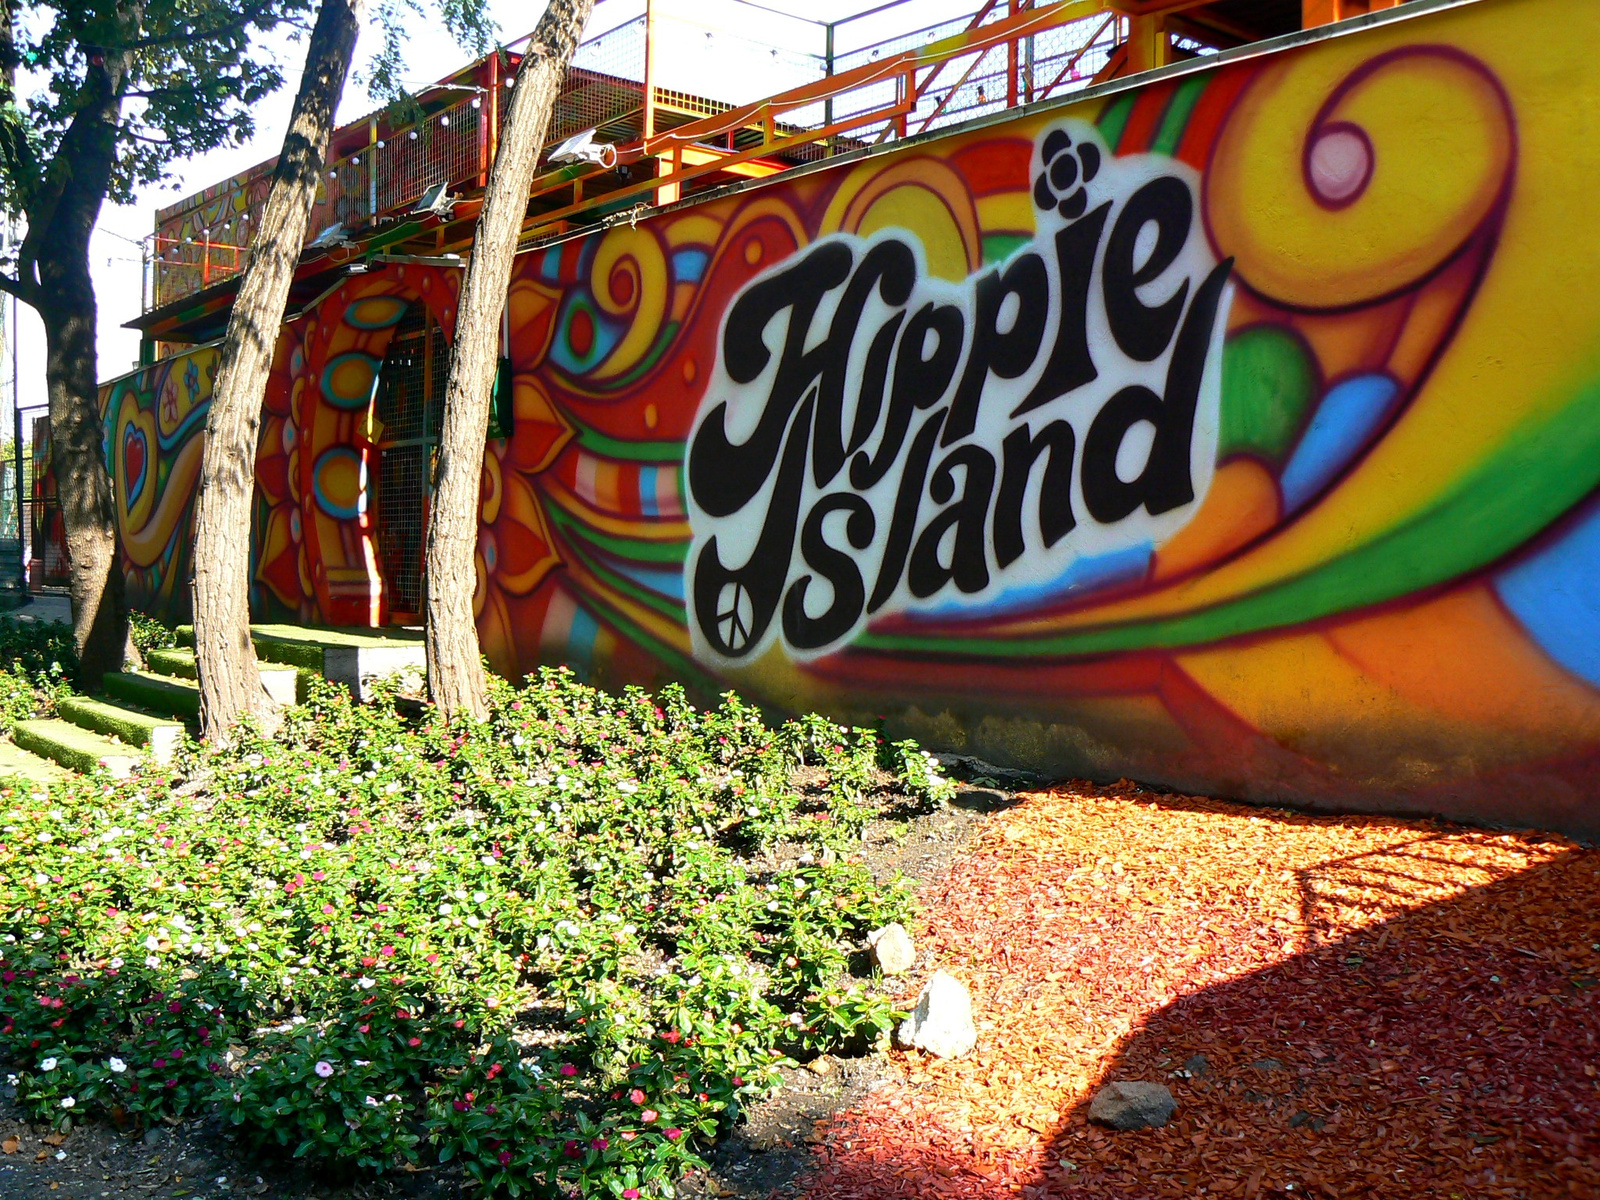 "Hippie Island"